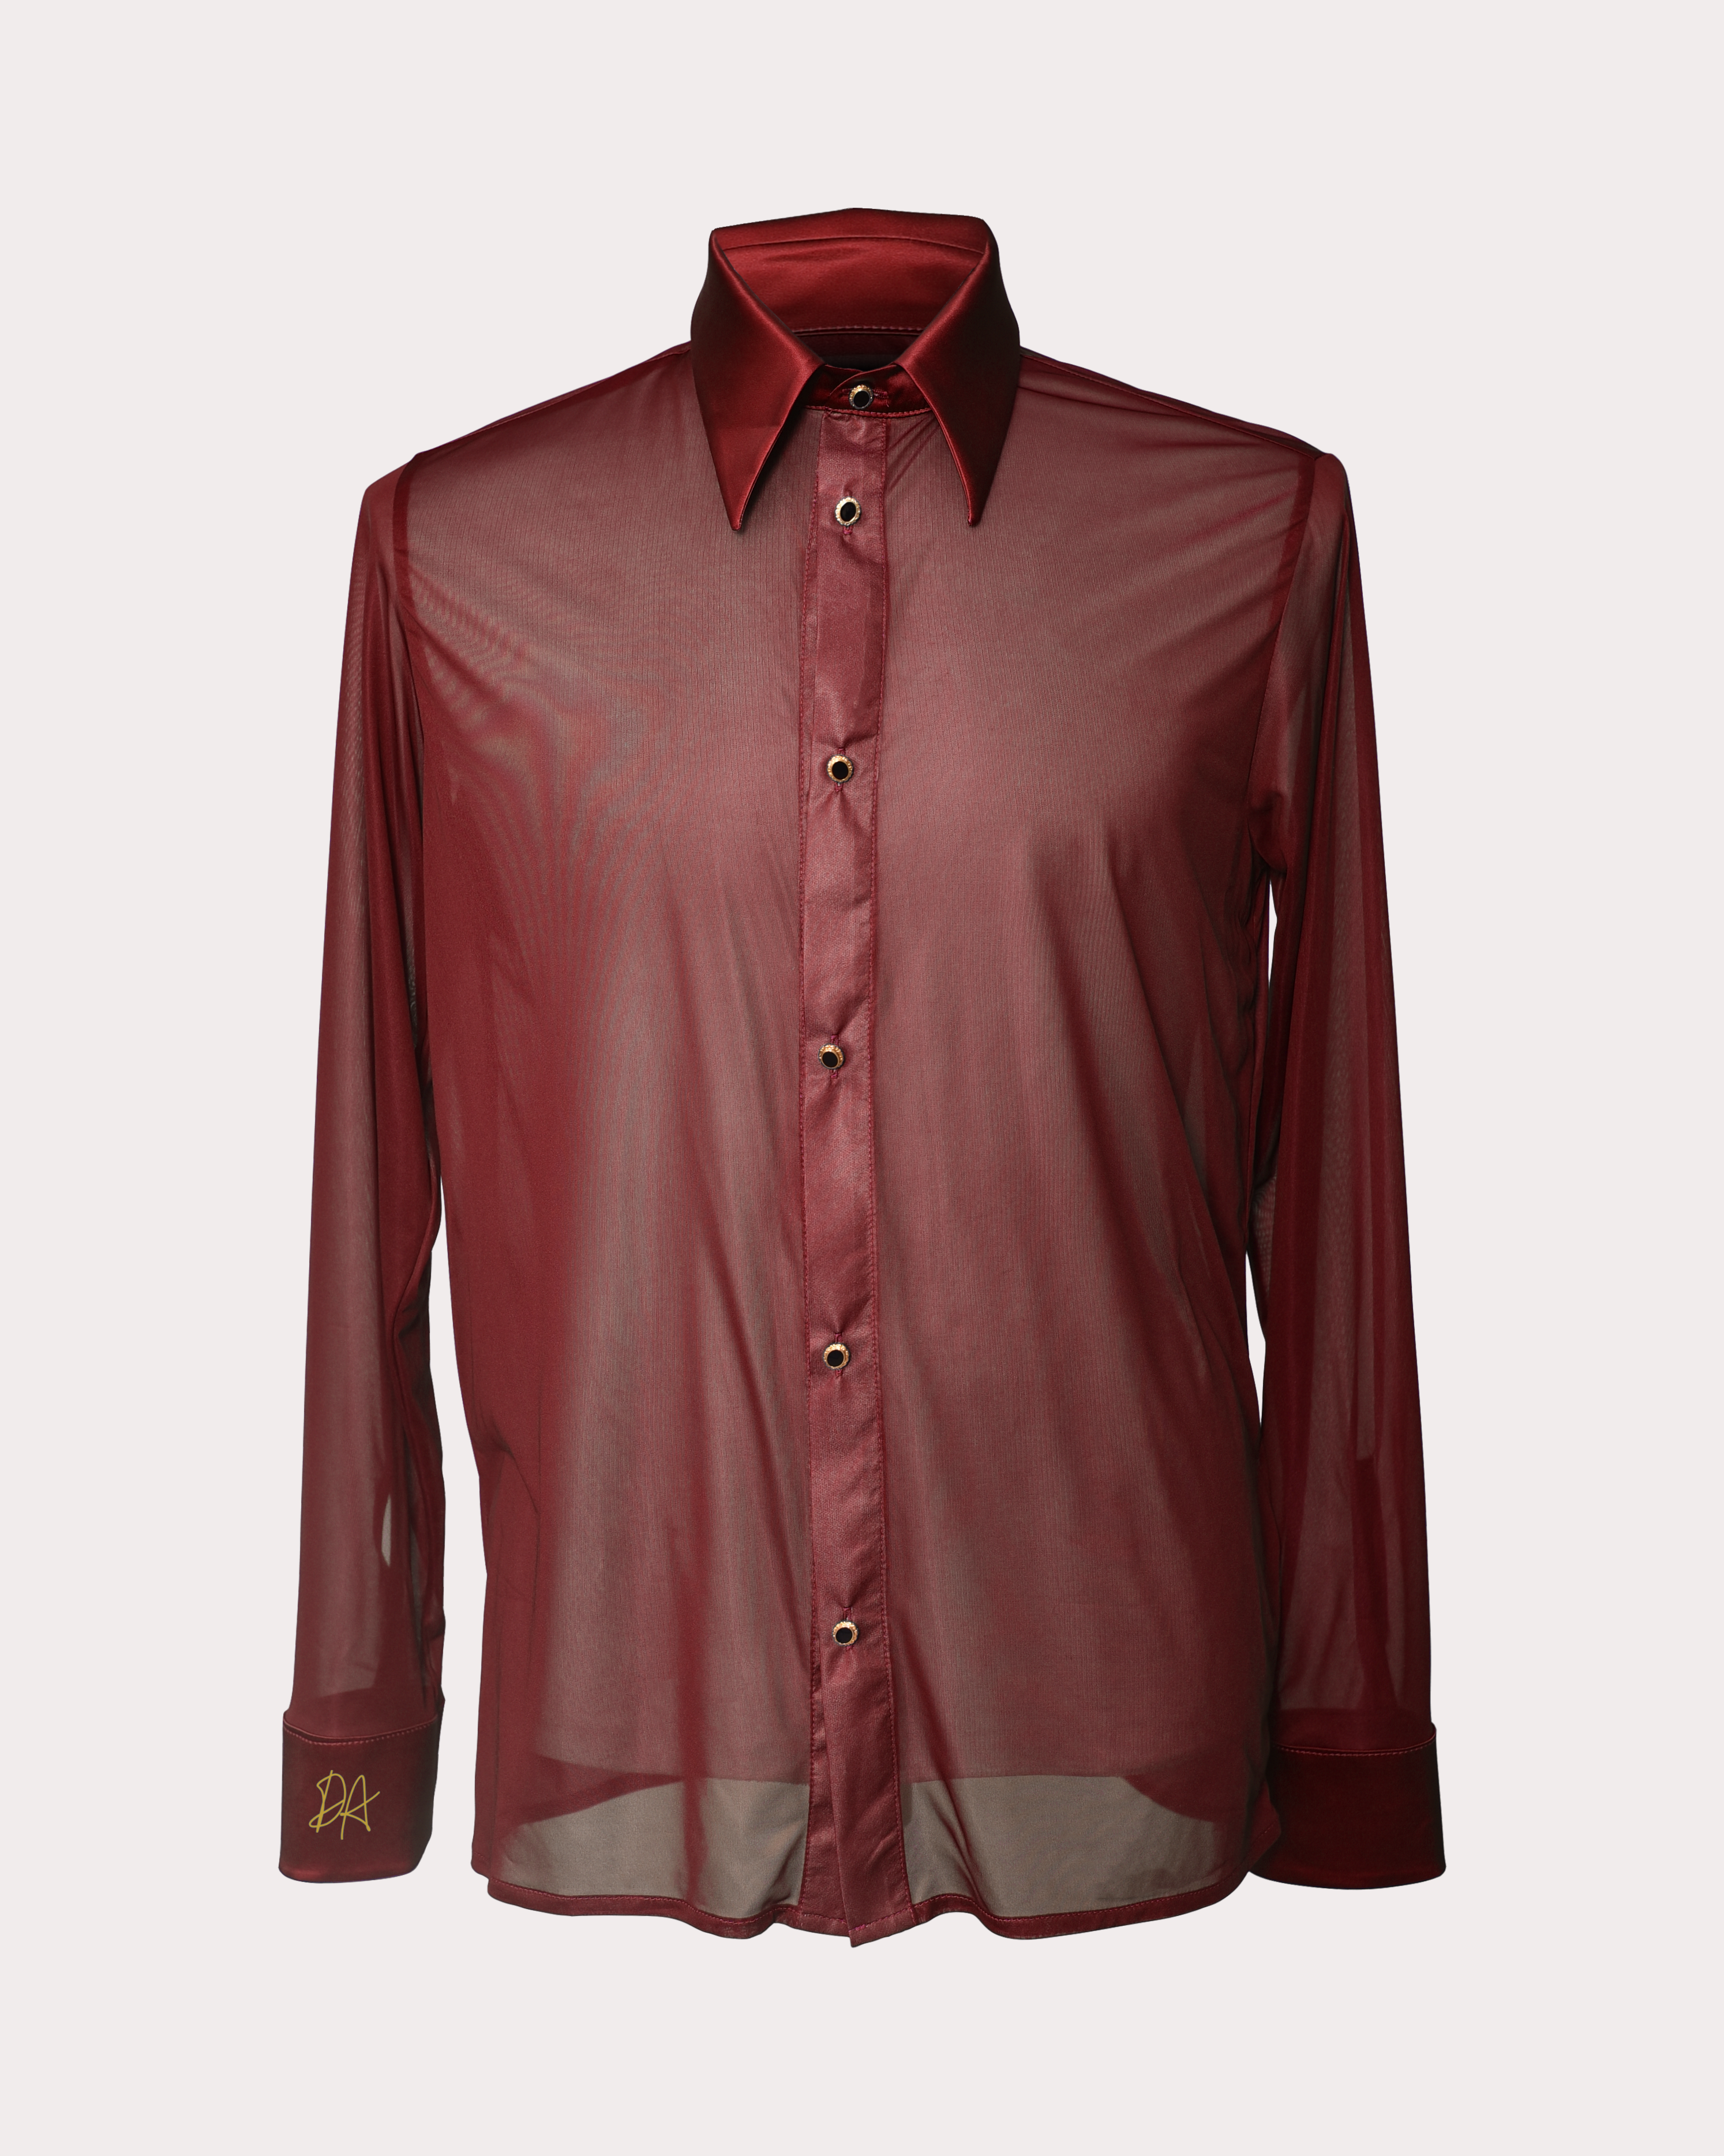 Unisex Translucent Shirt